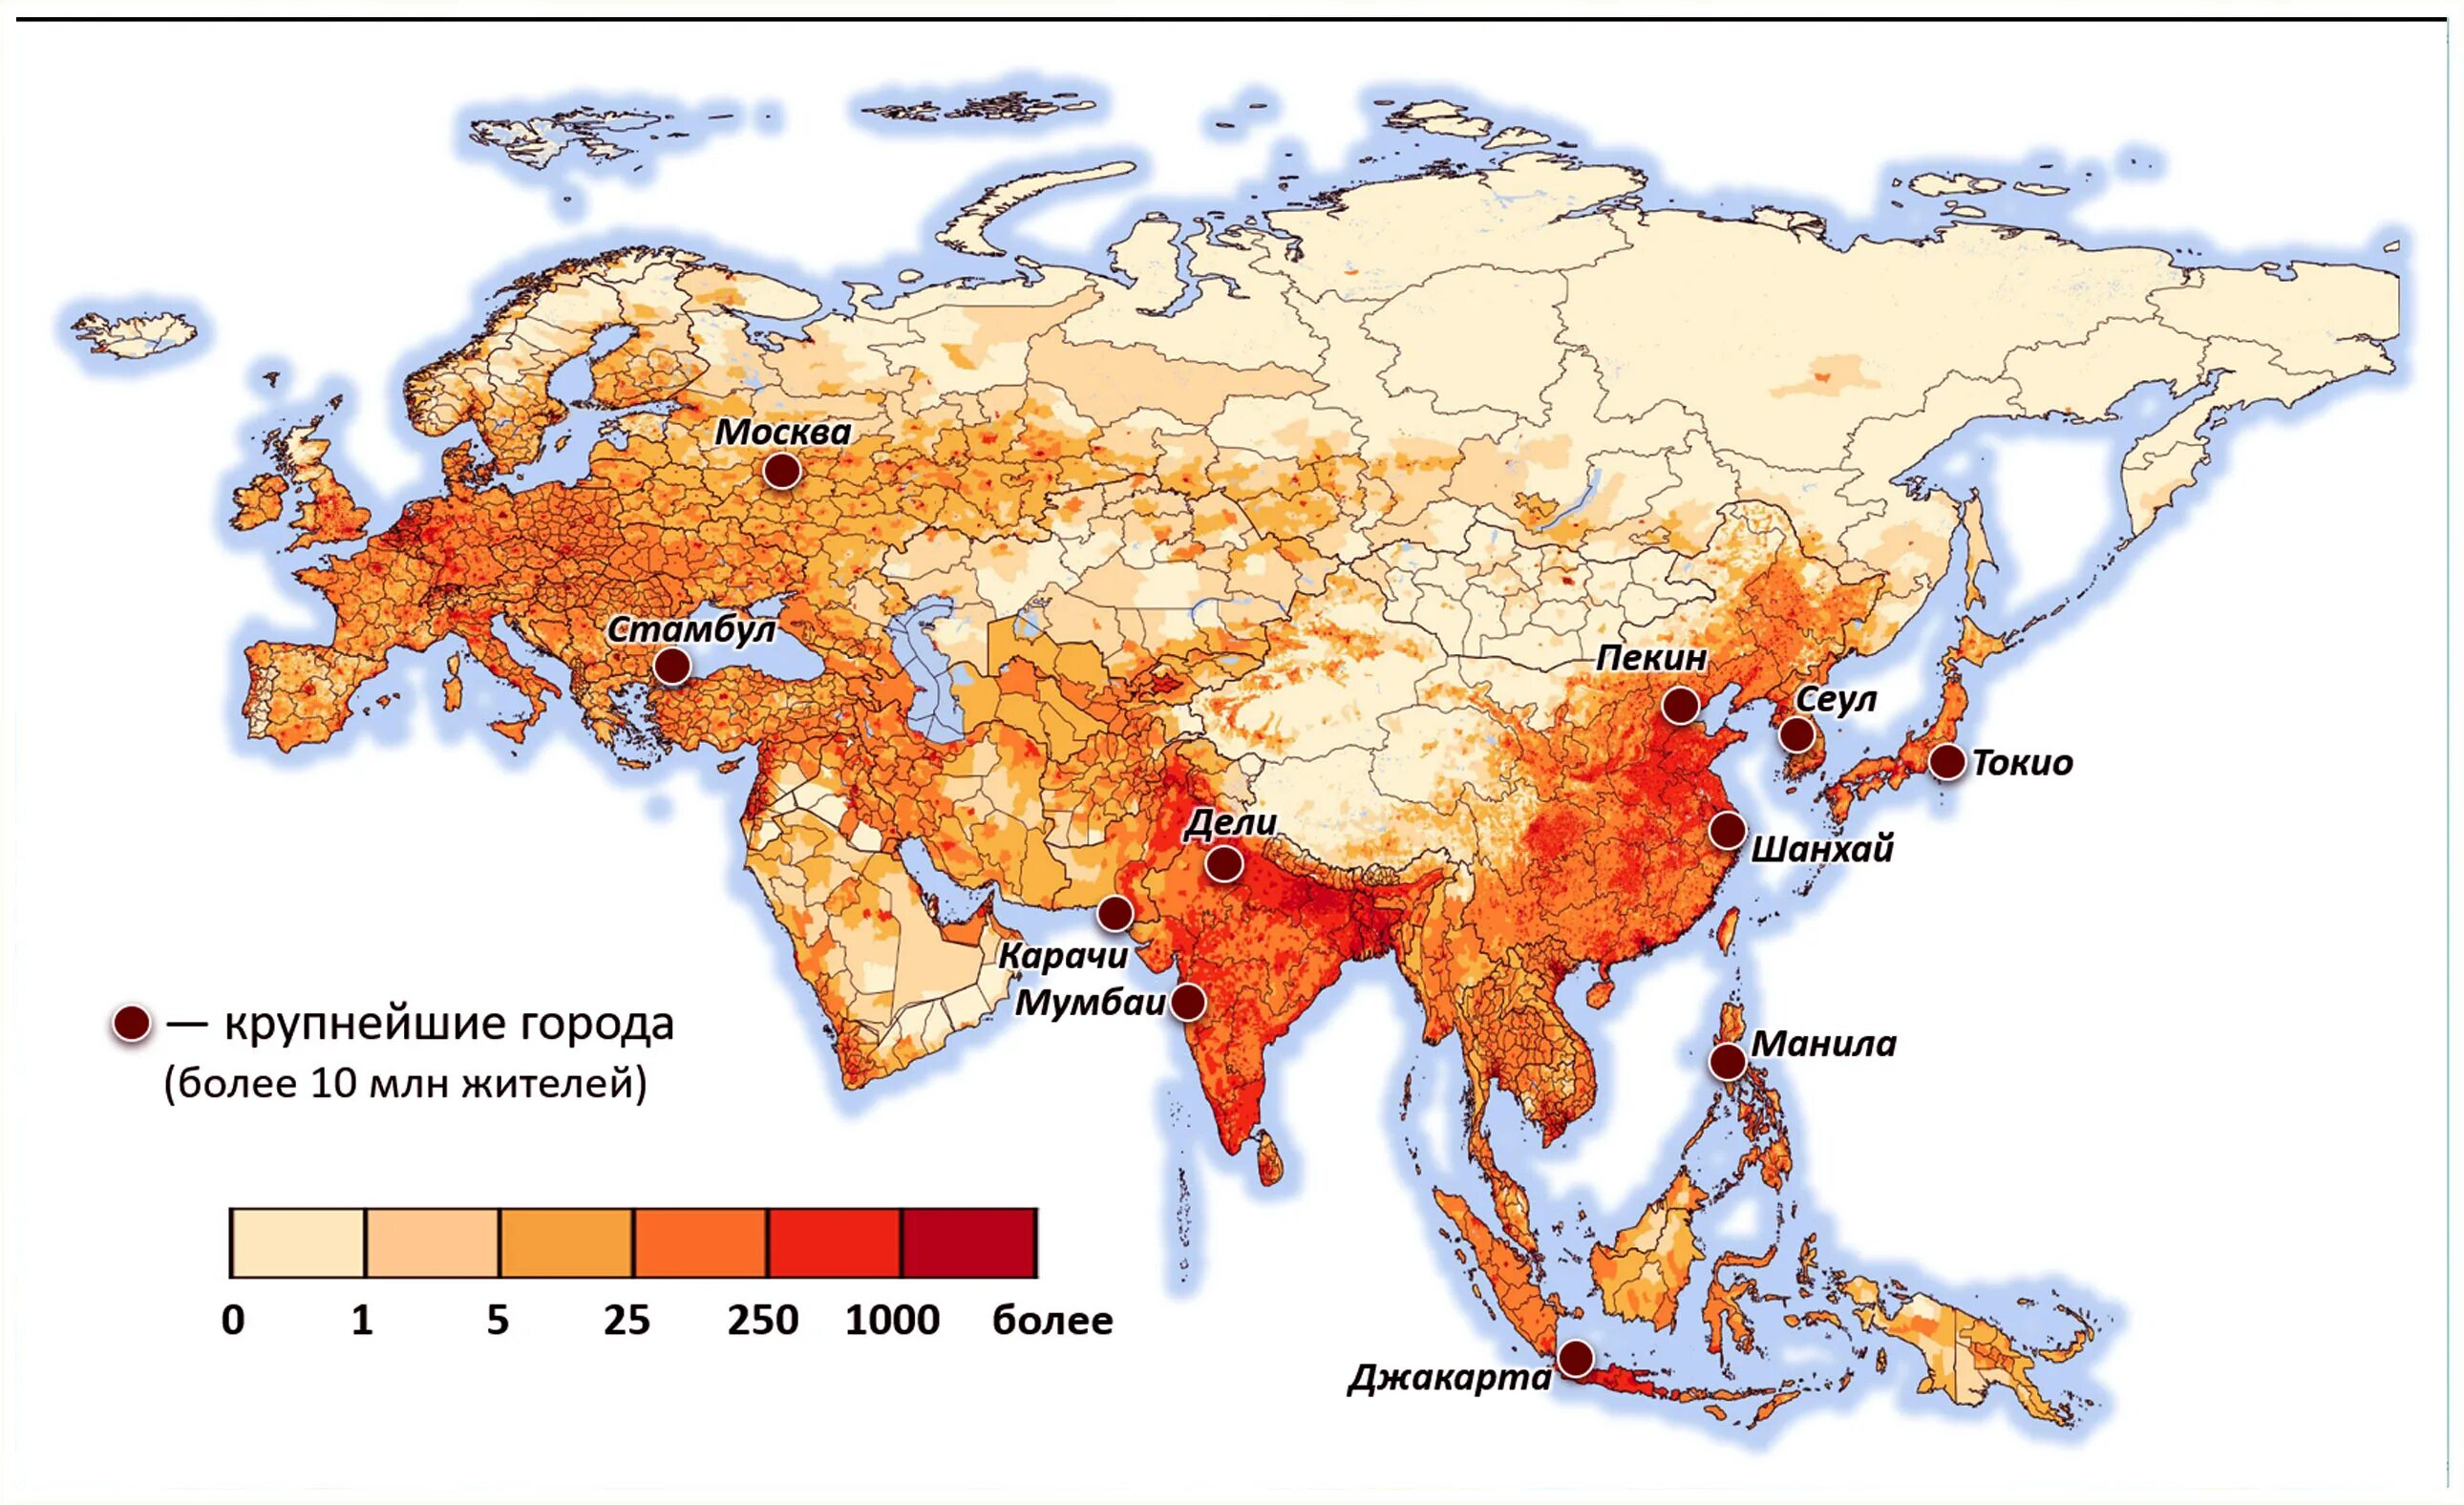 Самые большие страны азии по населению. Карта плотности населения Евразии. Карта плотности населения Азии. Карта плотности населения стран Азии. Плотность населения Евразии.